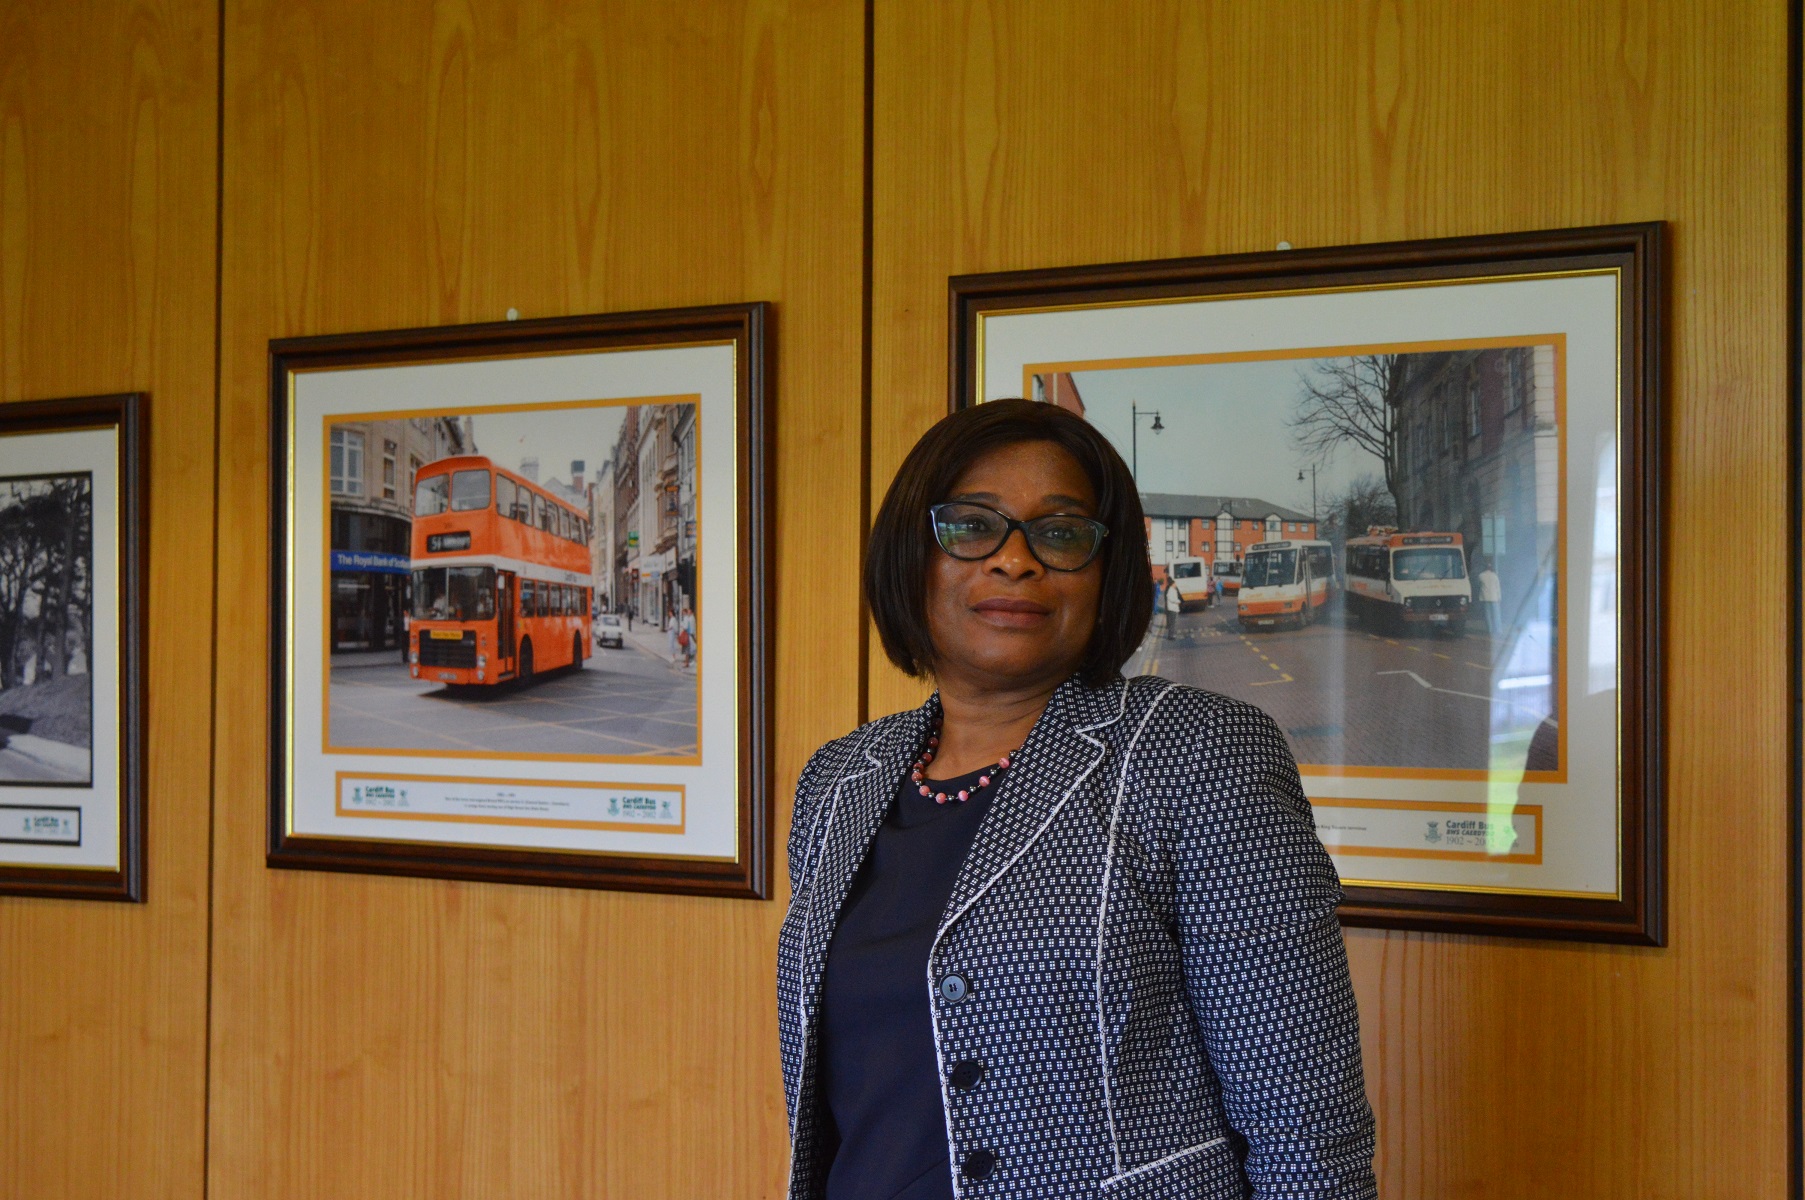 Cardiff Bus Managing Director Cynthia Ogbonna